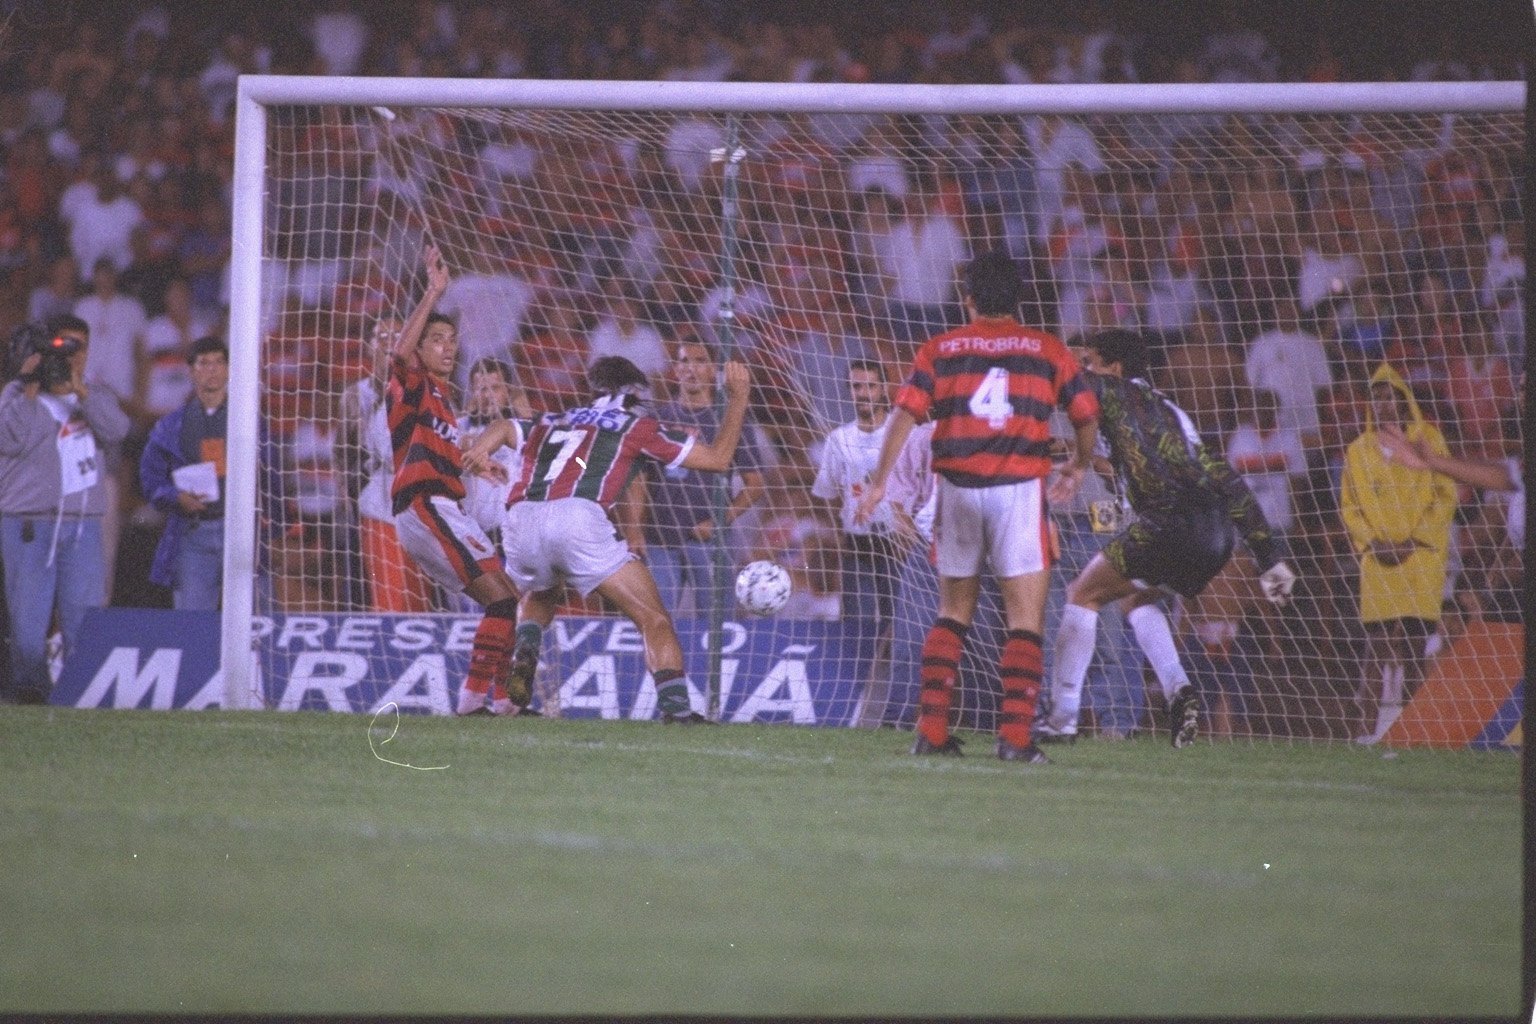 Fluminense 3 x 2 Flamengo - 25 de junho de 1995: Um dos jogos mais marcantes da história dos clássicos e do próprio Maracanã foi na final do Campeonato Carioca de 1995, quando Renato Gaúcho marcou o famoso gol de barriga para garantir o título tricolor.